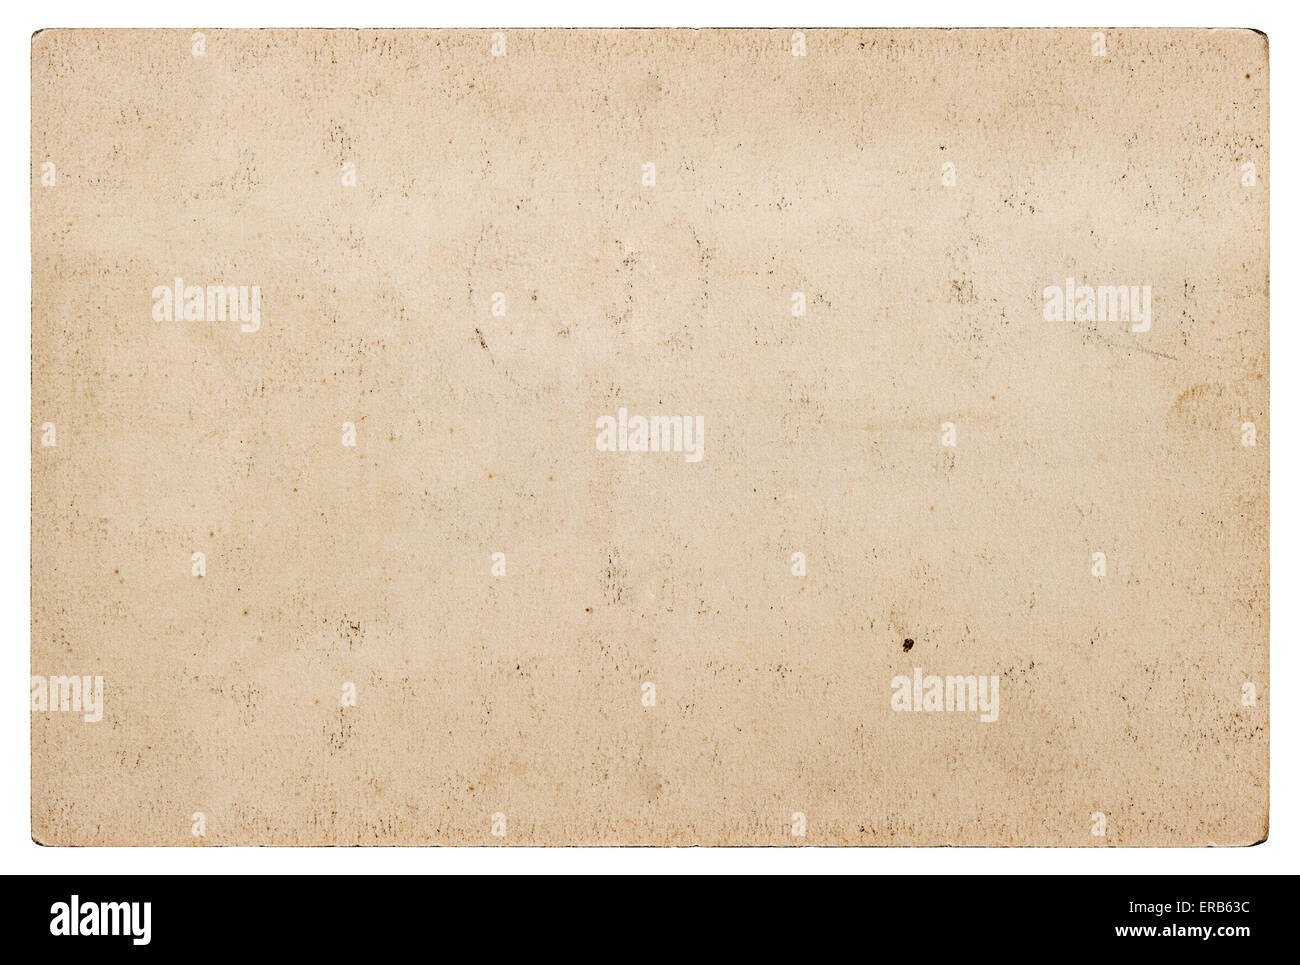 La texture du papier craft Grungy. Carton utilisé isolé sur fond blanc. Objet d'album Banque D'Images